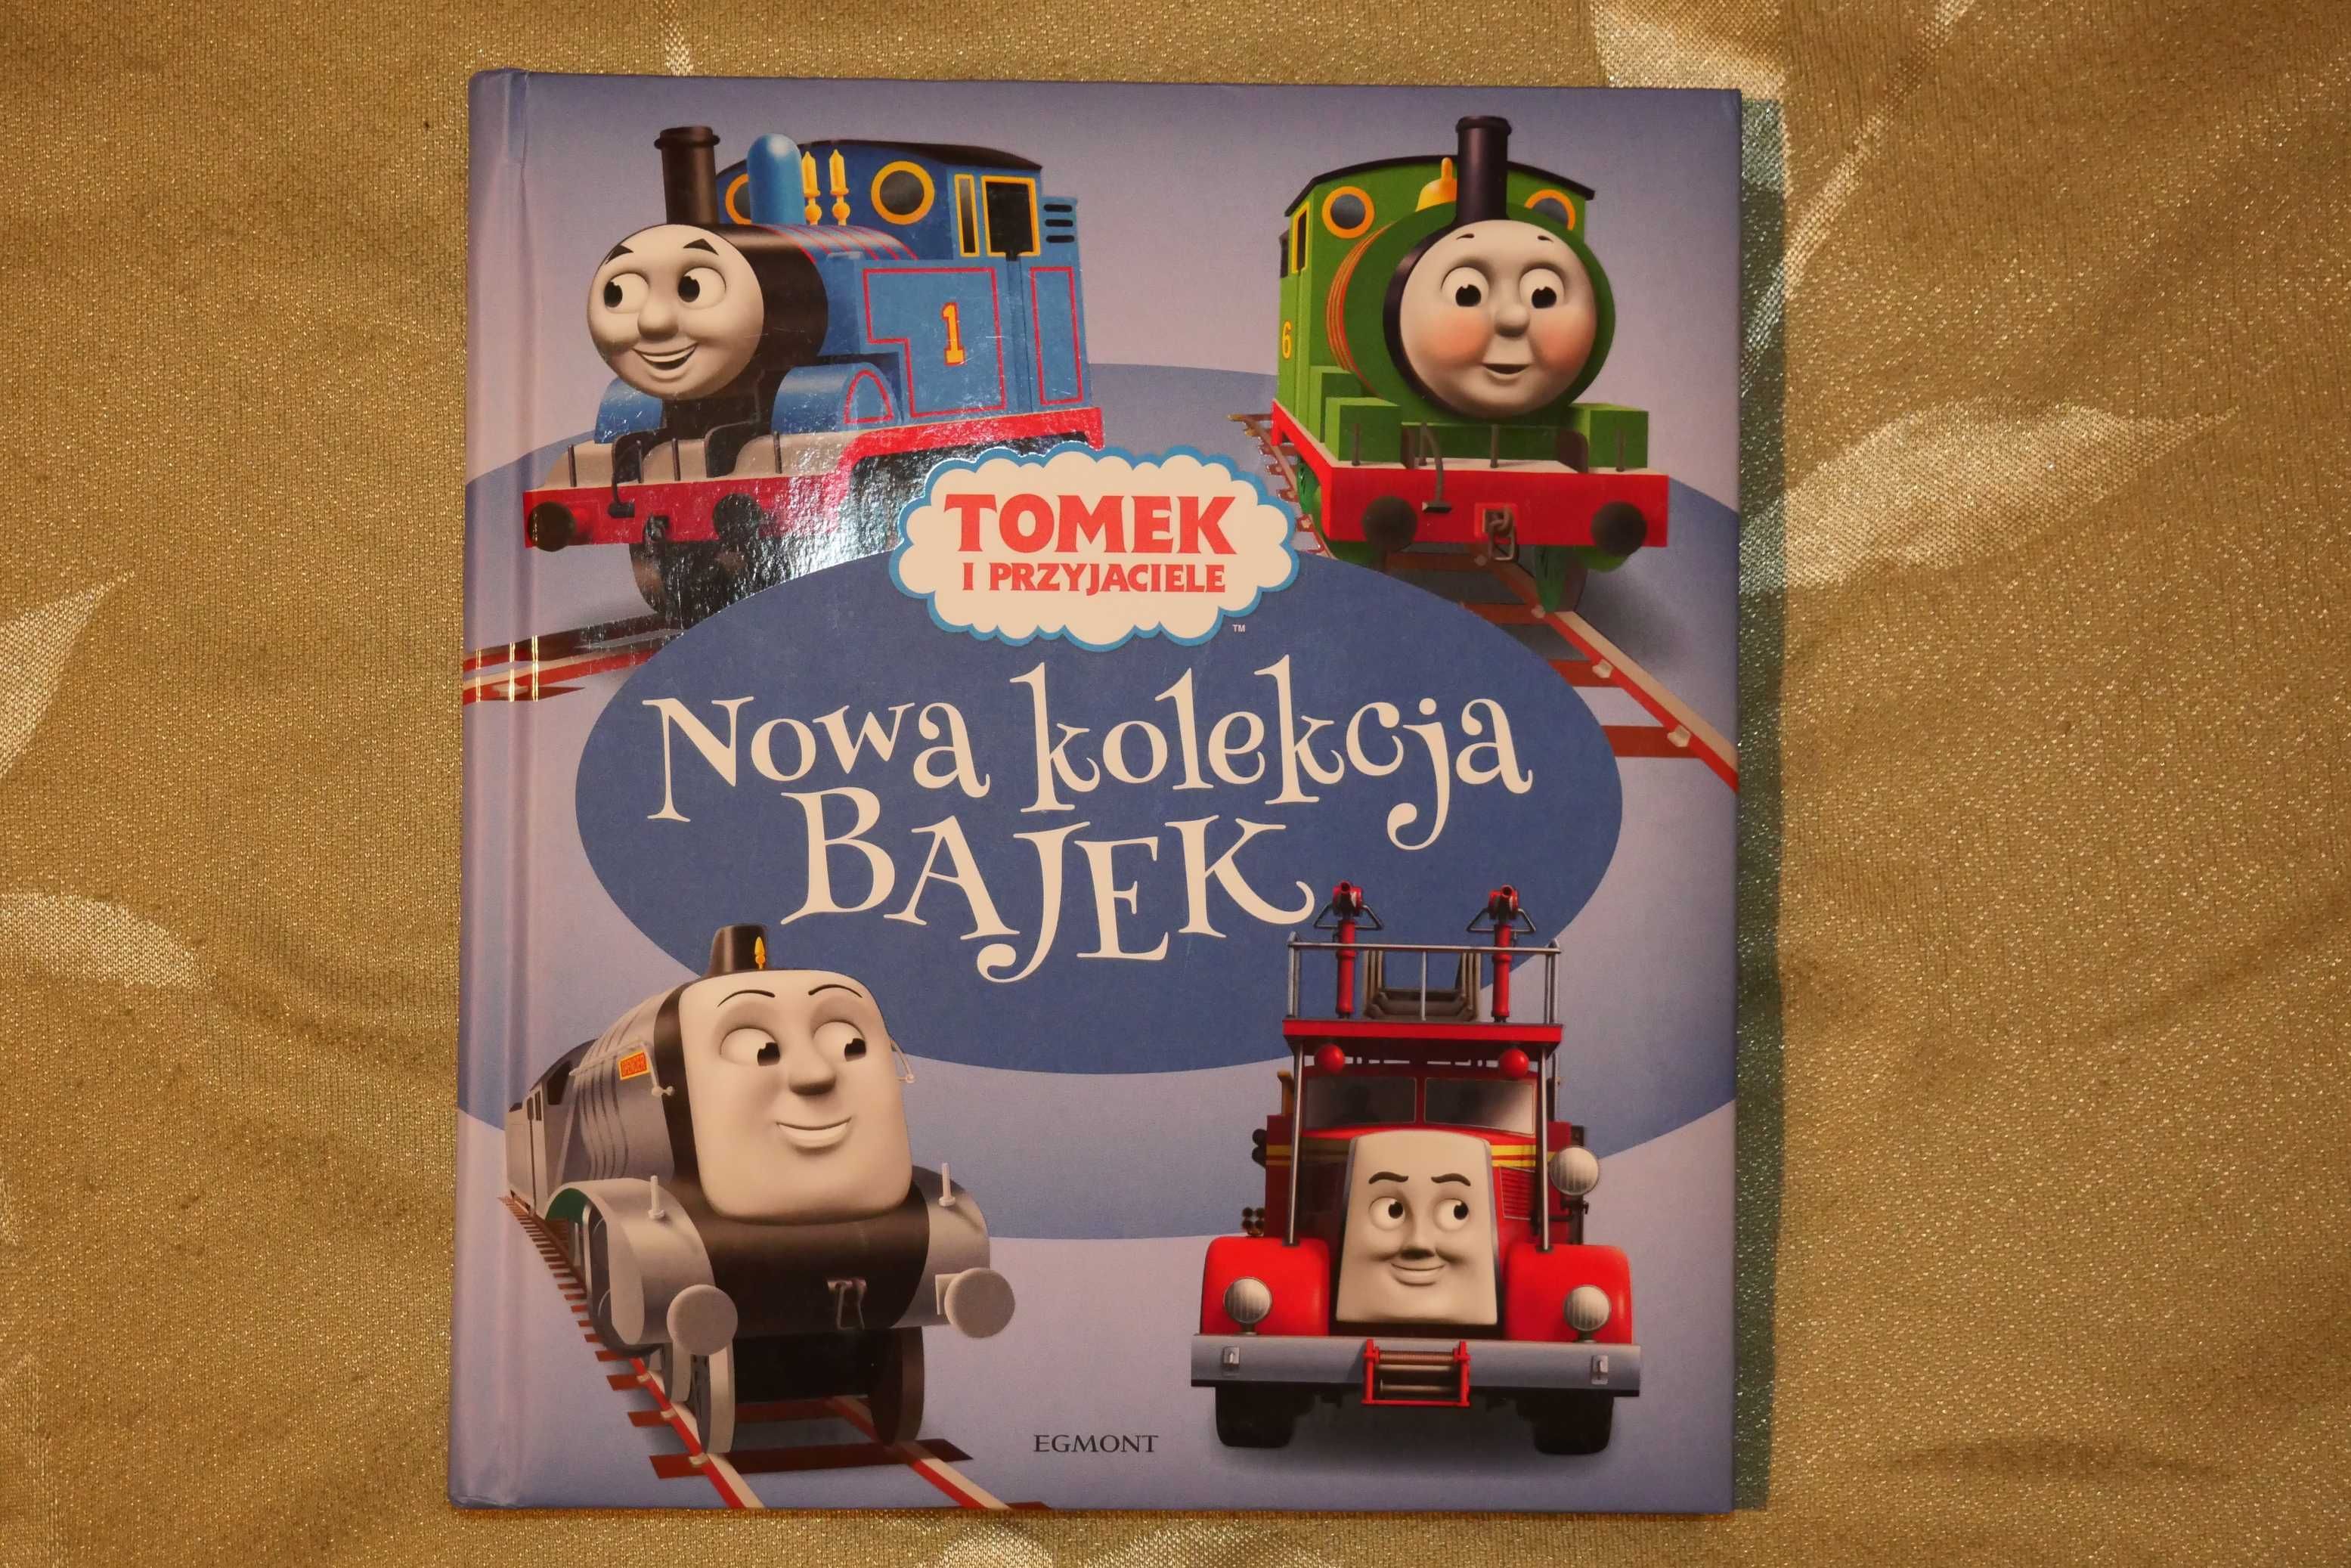 Nowa kolekcja bajek Tomek i Przyjaciele Egmont książka bajk dla dzieci